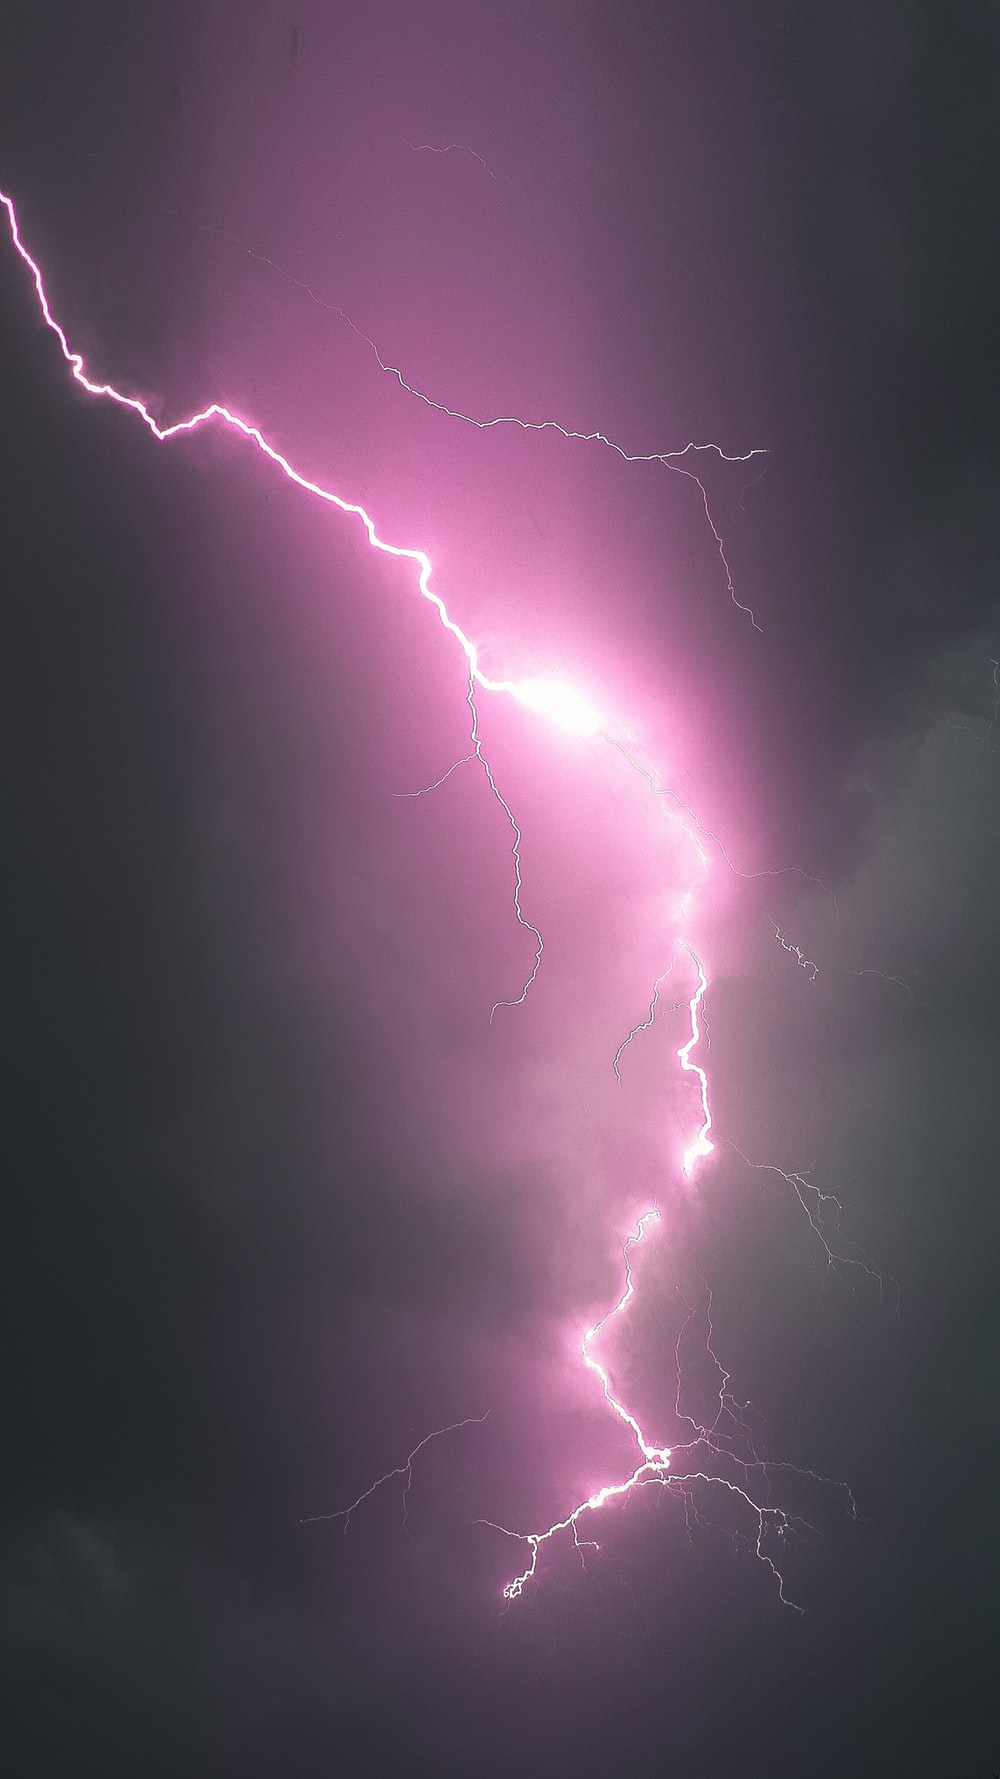 Lightning Image. Download Free Image